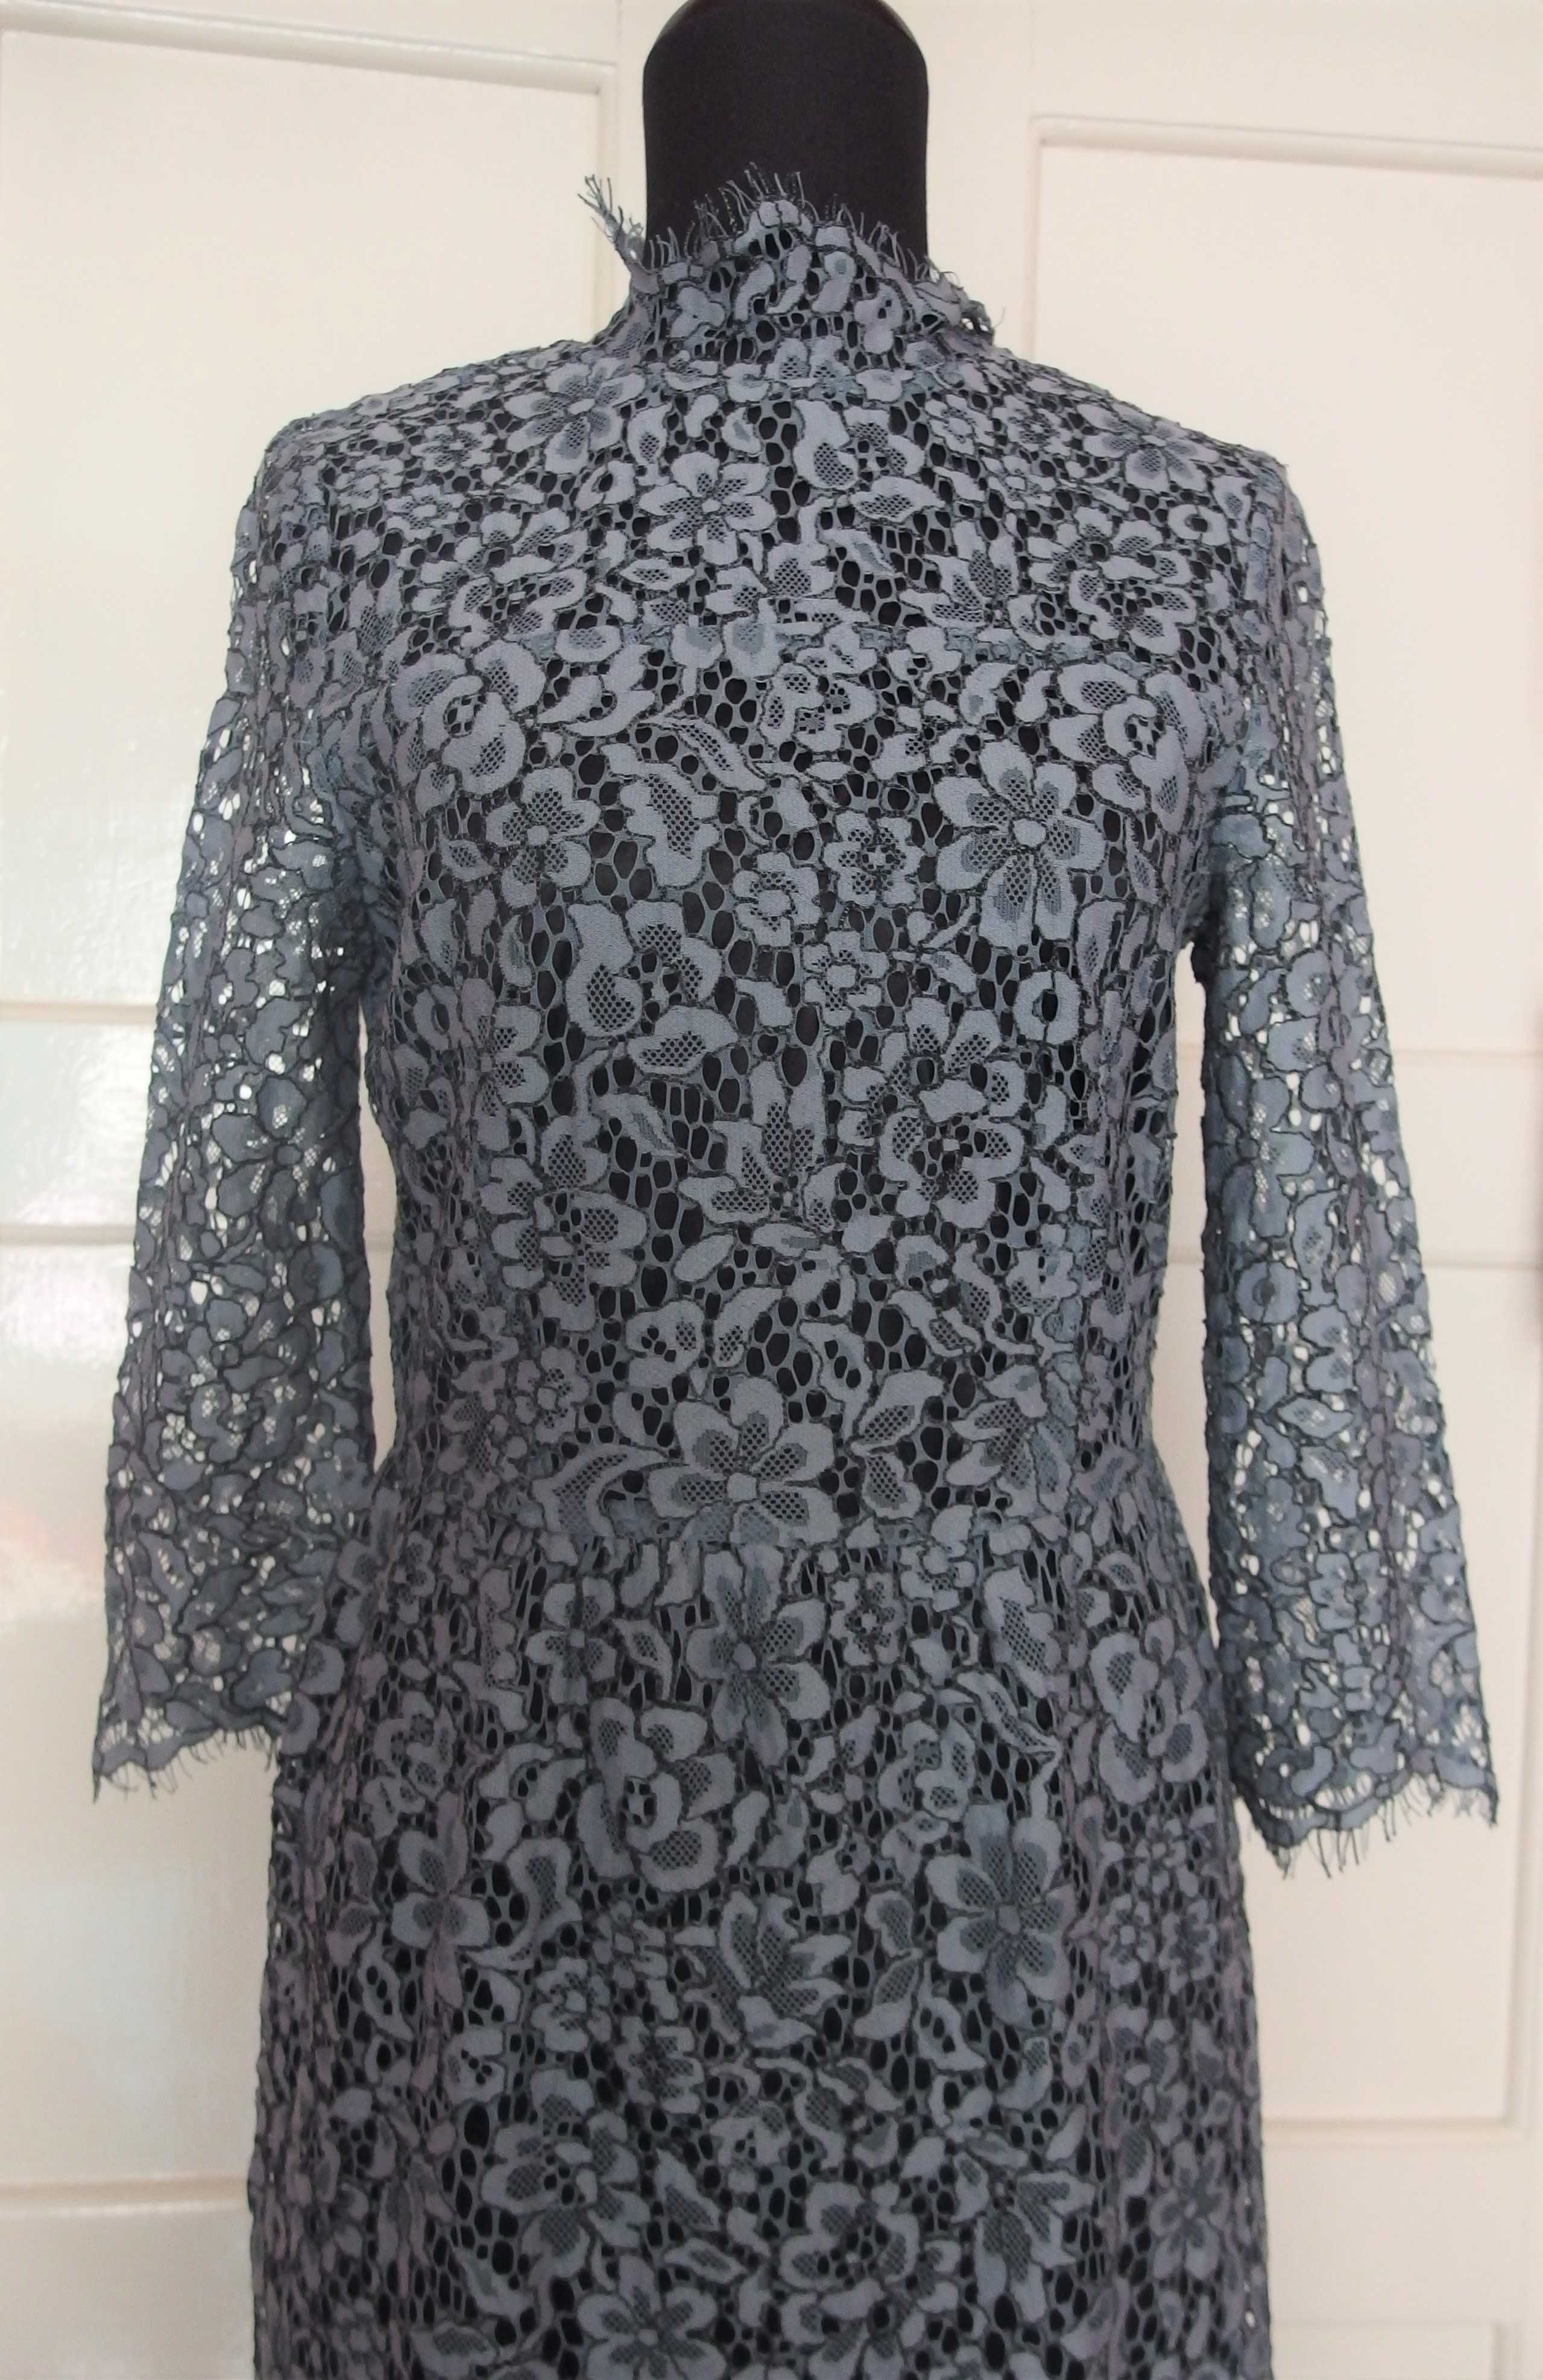 Koronkowa sukienka duńskiej marki SOAKED in luxury.